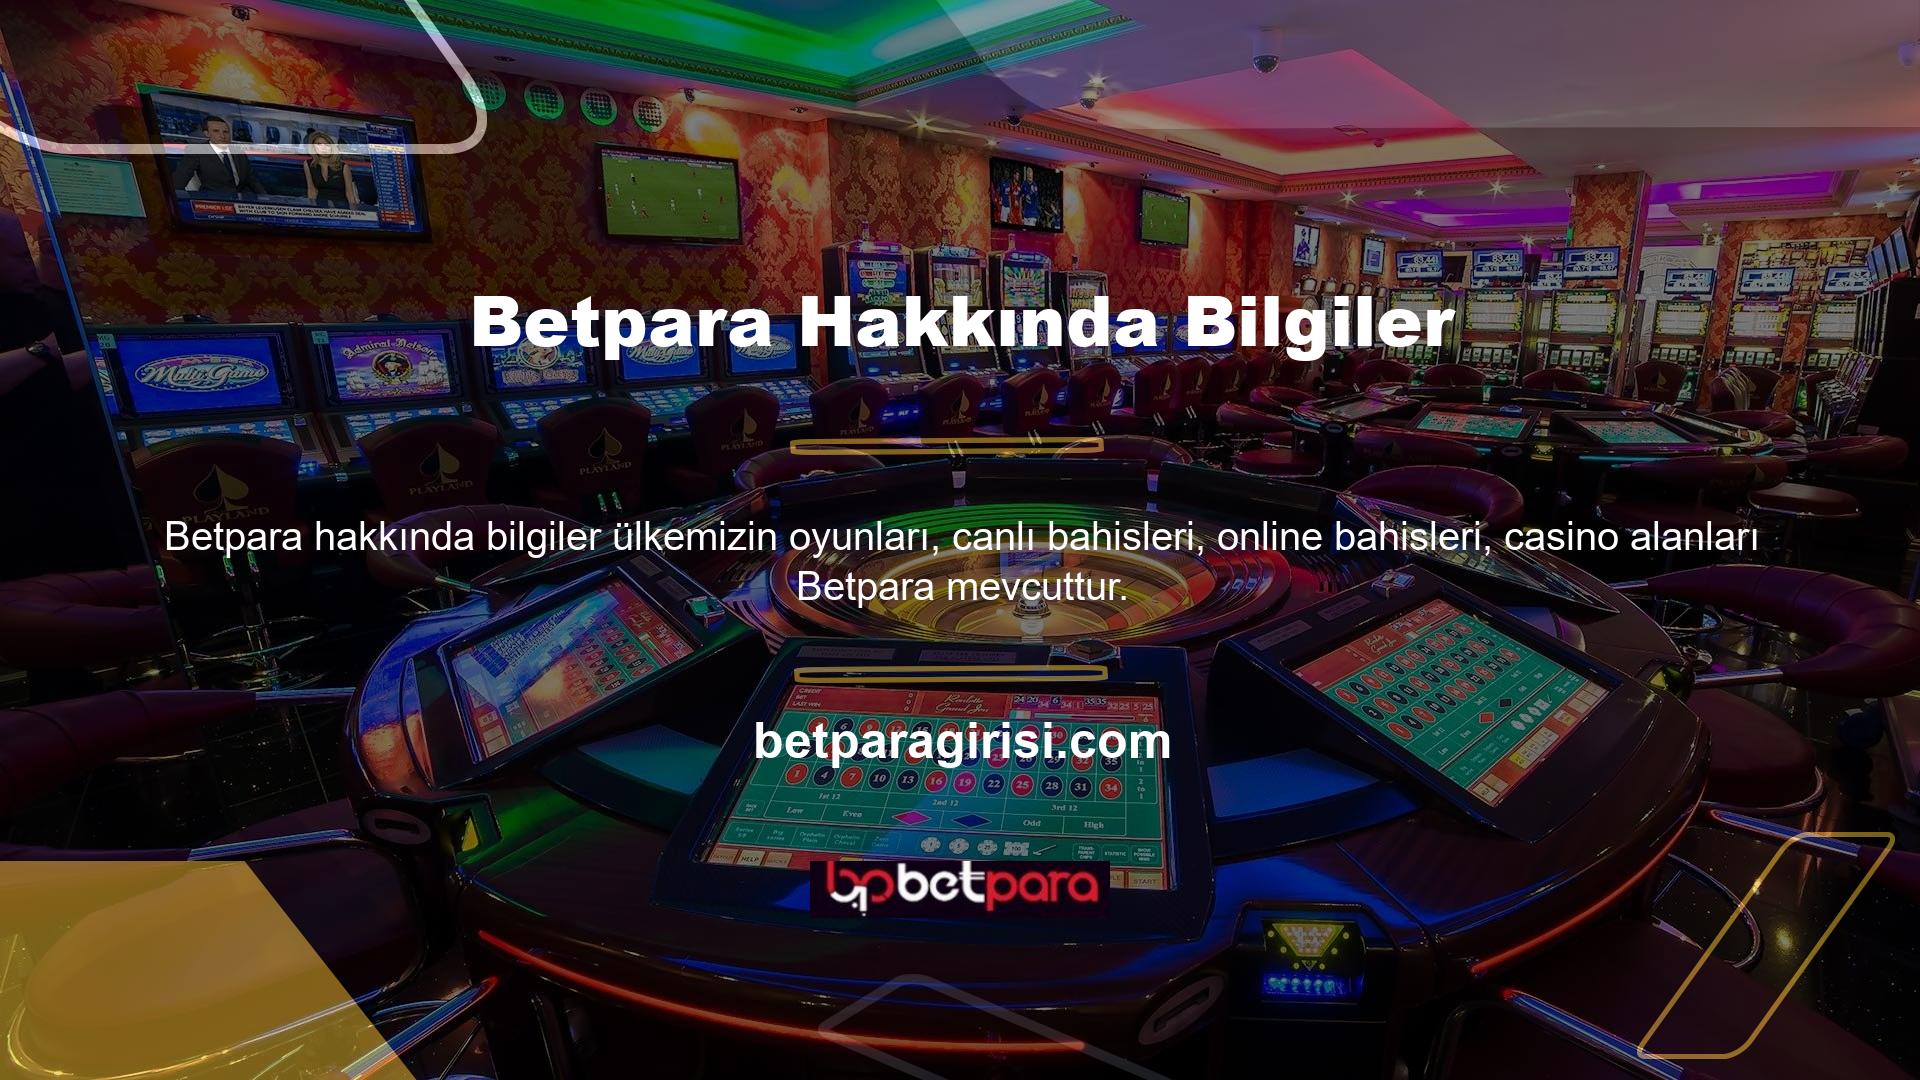 Betpara casino sitesi insanlar arasında popüler bir seçimdir